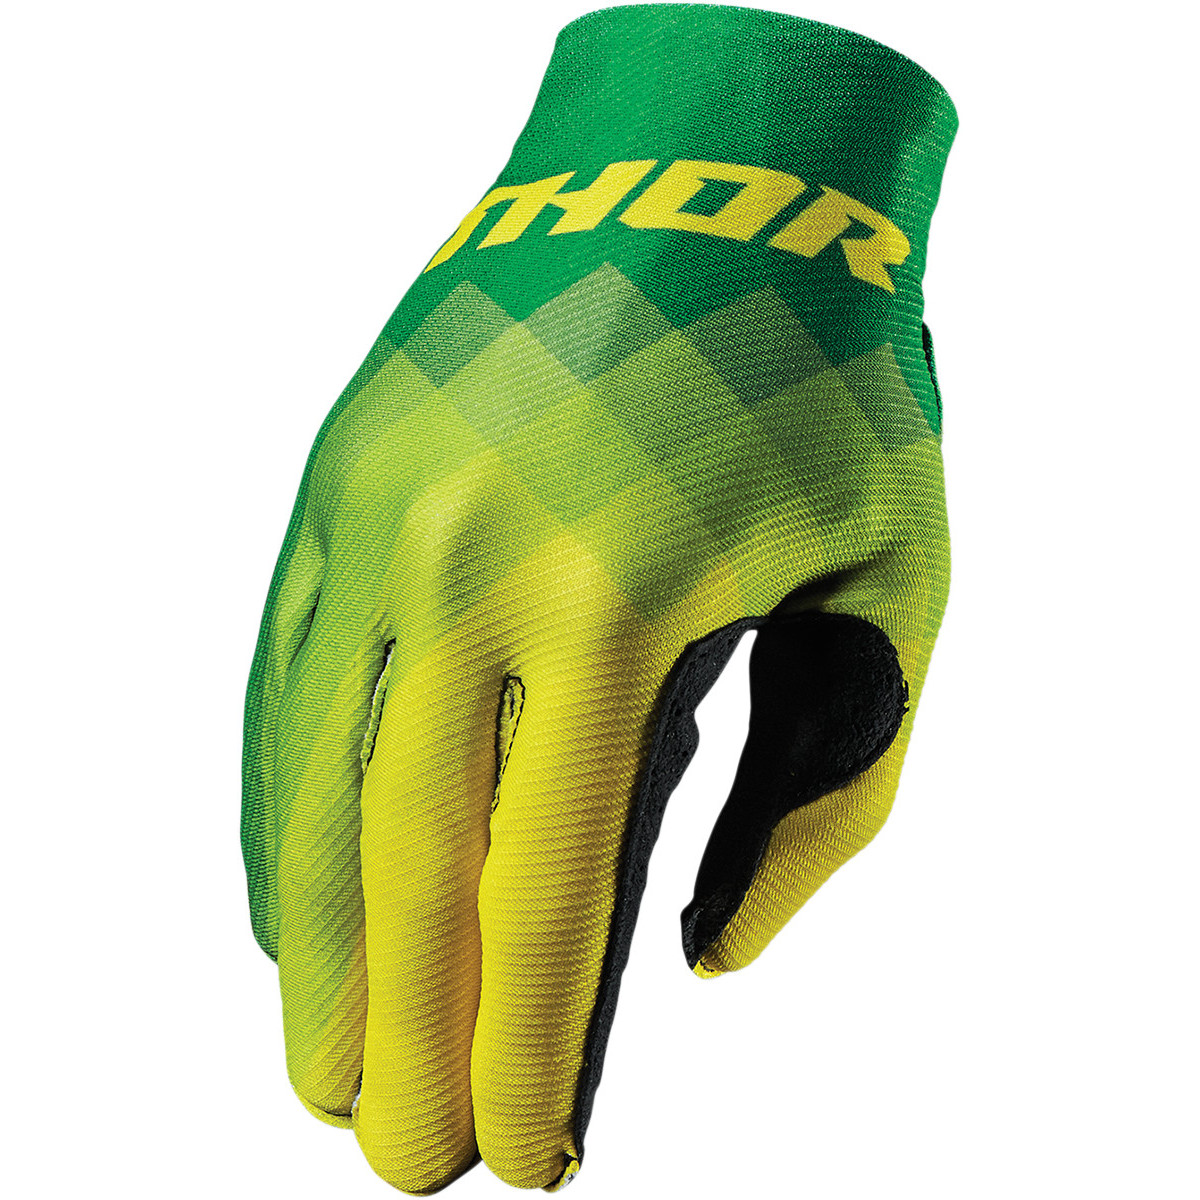 Thor Handschuhe Invert Pix - Grün/Gelb